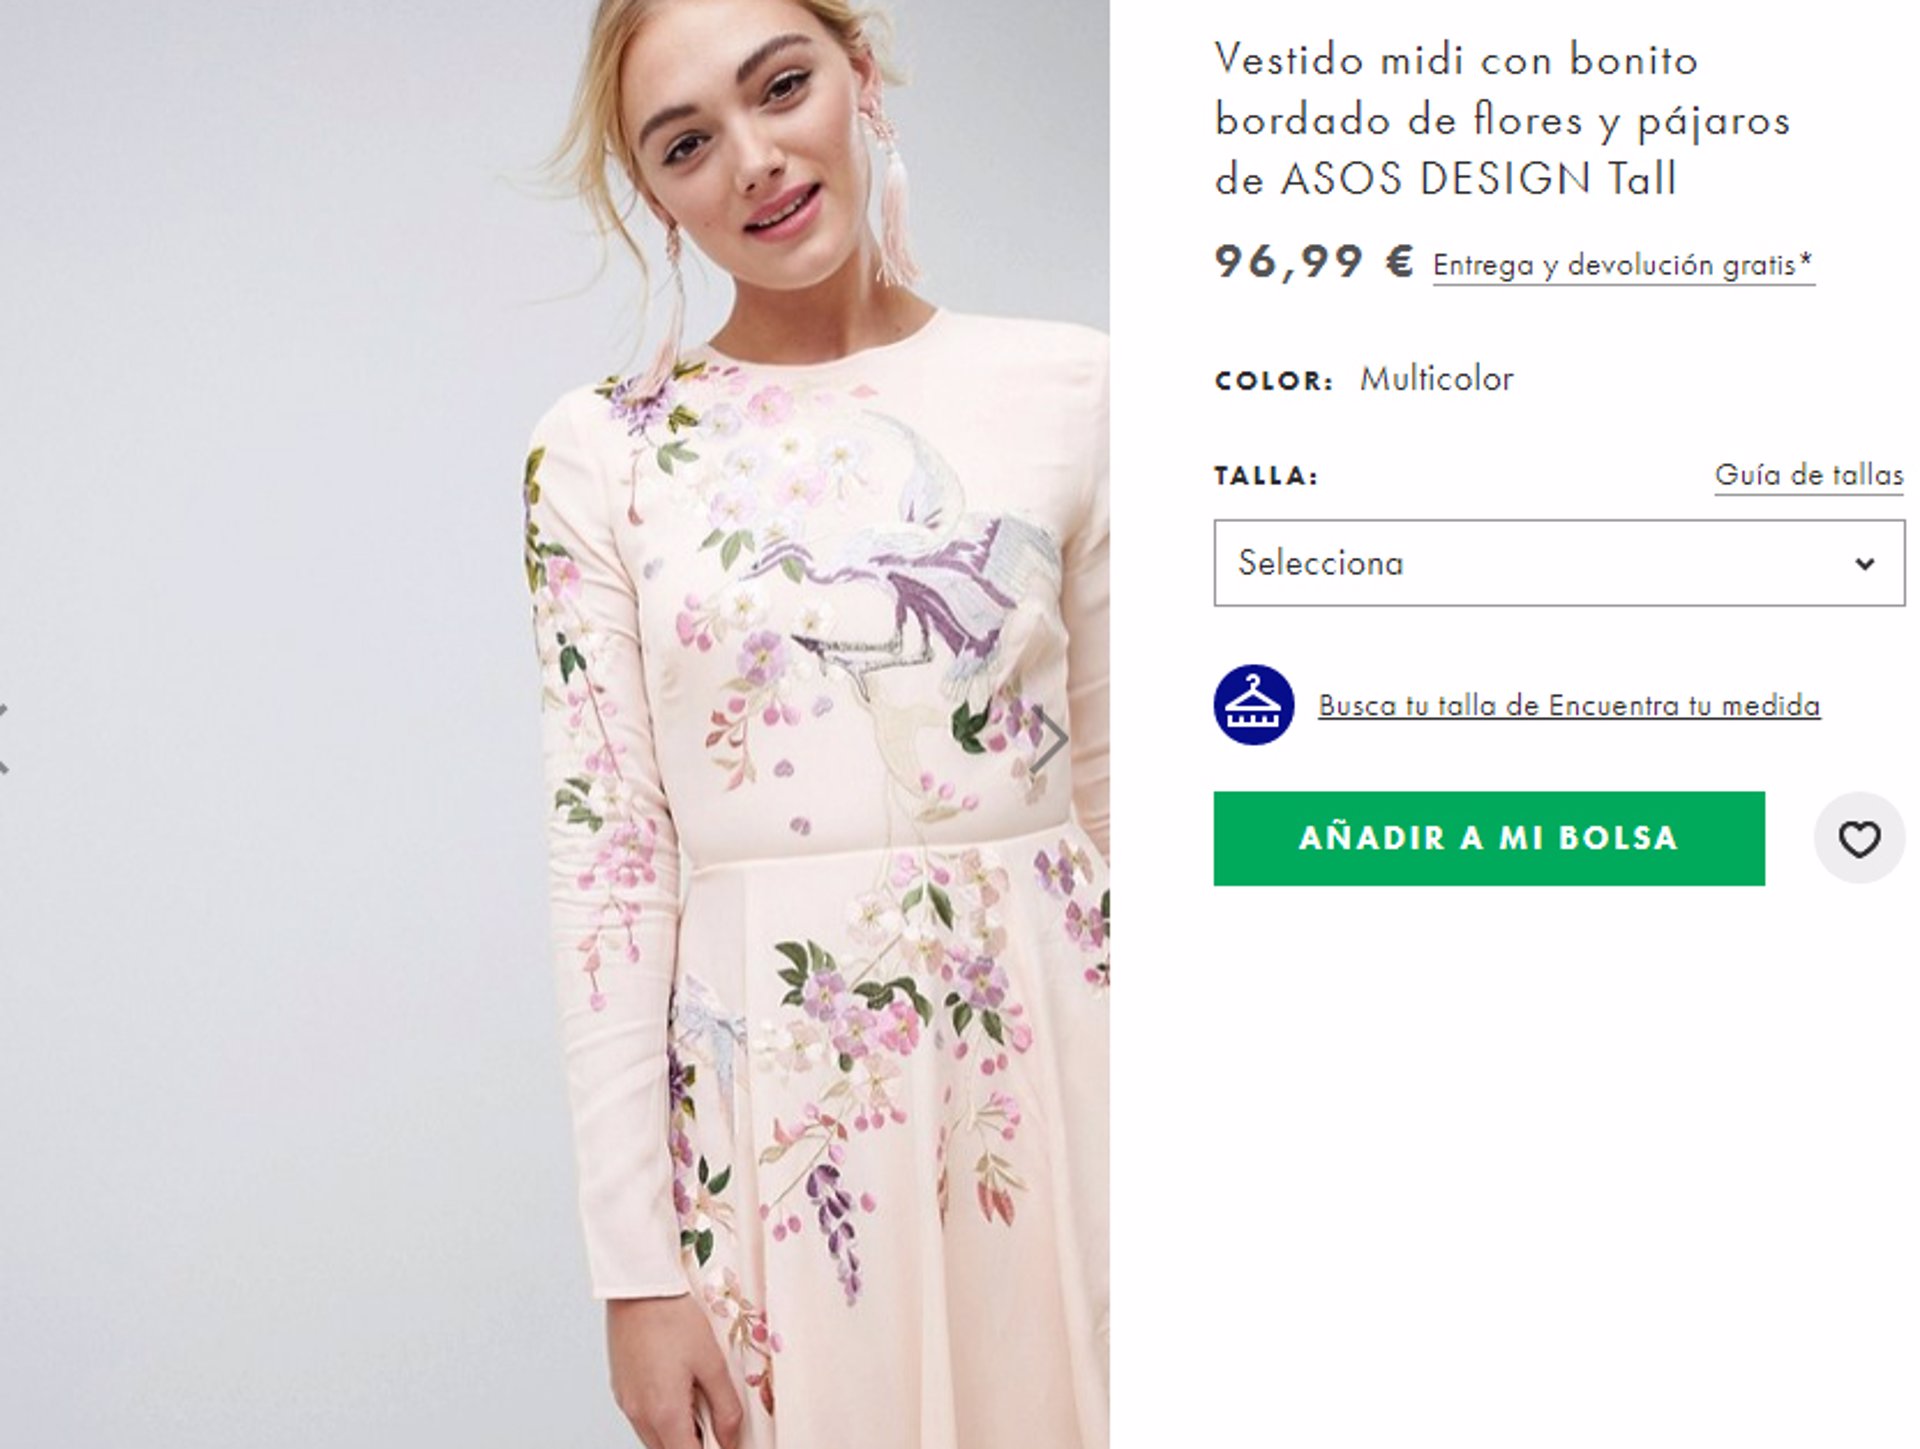 Vestido Letizia con motivos florales chinos, parecido en Asos